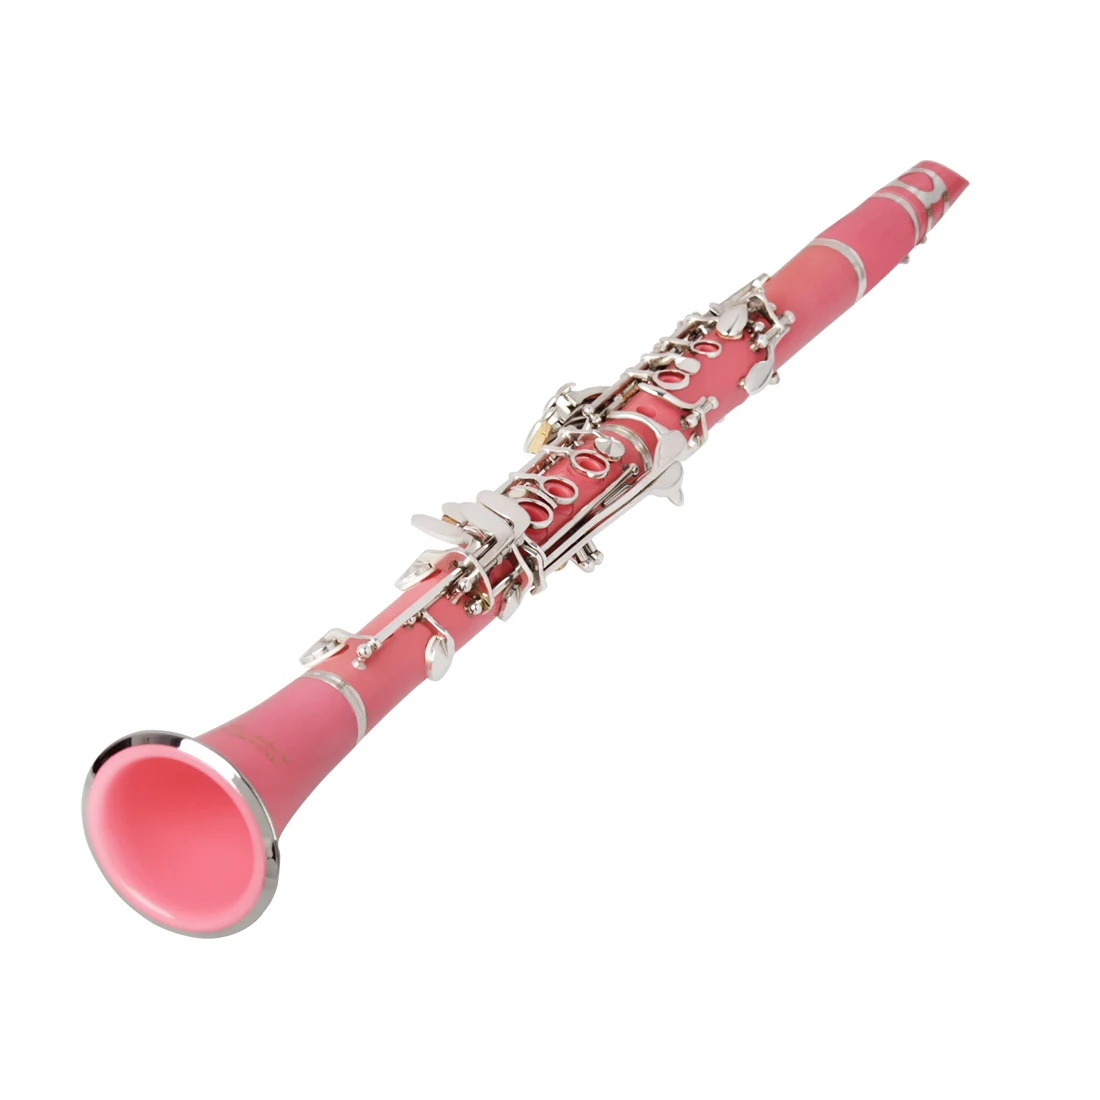 Черный, синий, зеленый, розовый, фиолетовый, красный, белый кларнет bB+ CareKit+ 11 Тростников+ Корпус ABS 17 клавиш bB ровное сопрано бинокулярный кларнет выбрать